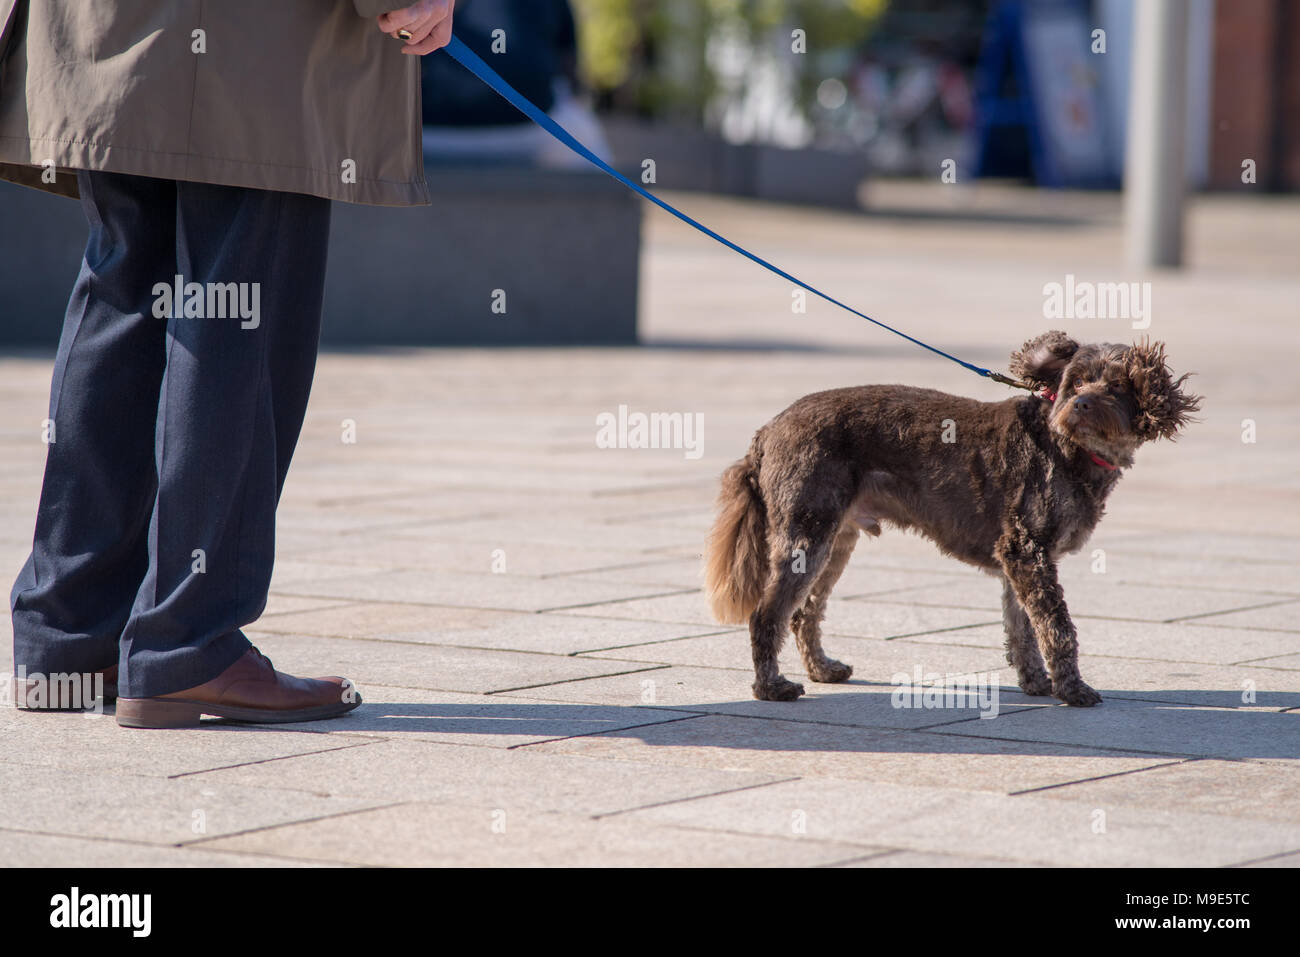 Kleine niedliche braune Hund auf der Leitung, schüttelt den Kopf und Ohren  mit elegant gekleideten Mann Eigentümer Stockfotografie - Alamy